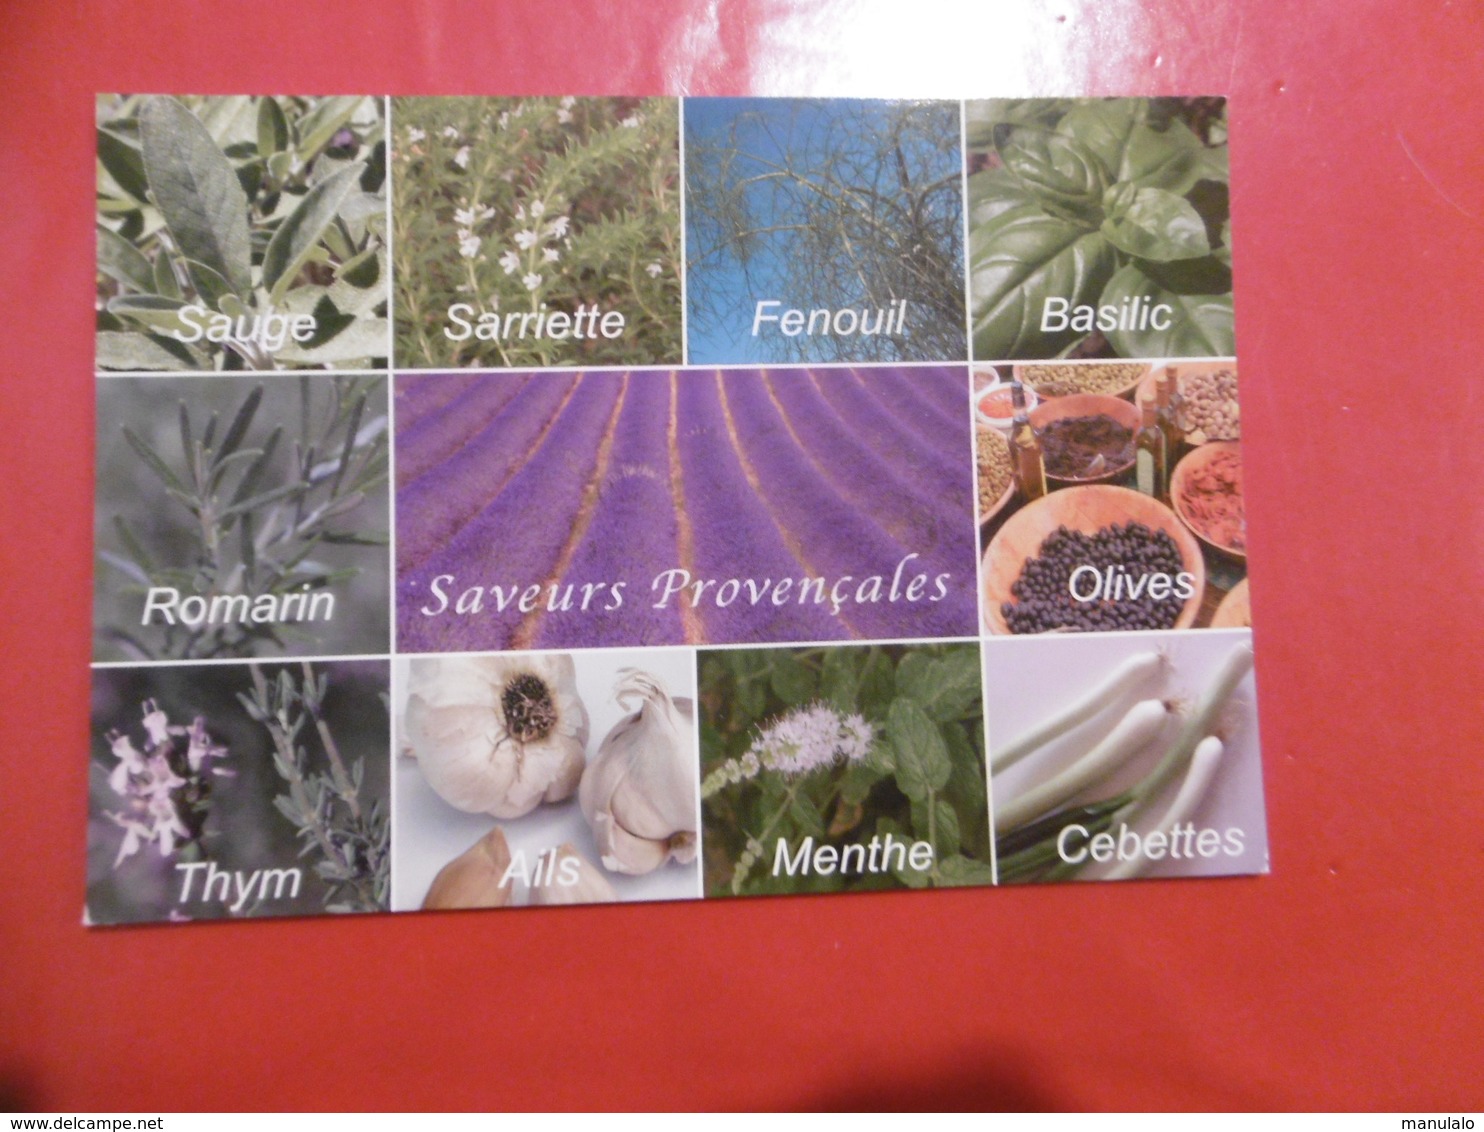 Plantes - Sauge, Sarriette, Fenouil, Basilic, Romarin, Olives, Thym, Ails, Menthes, Cebettes - Heilpflanzen